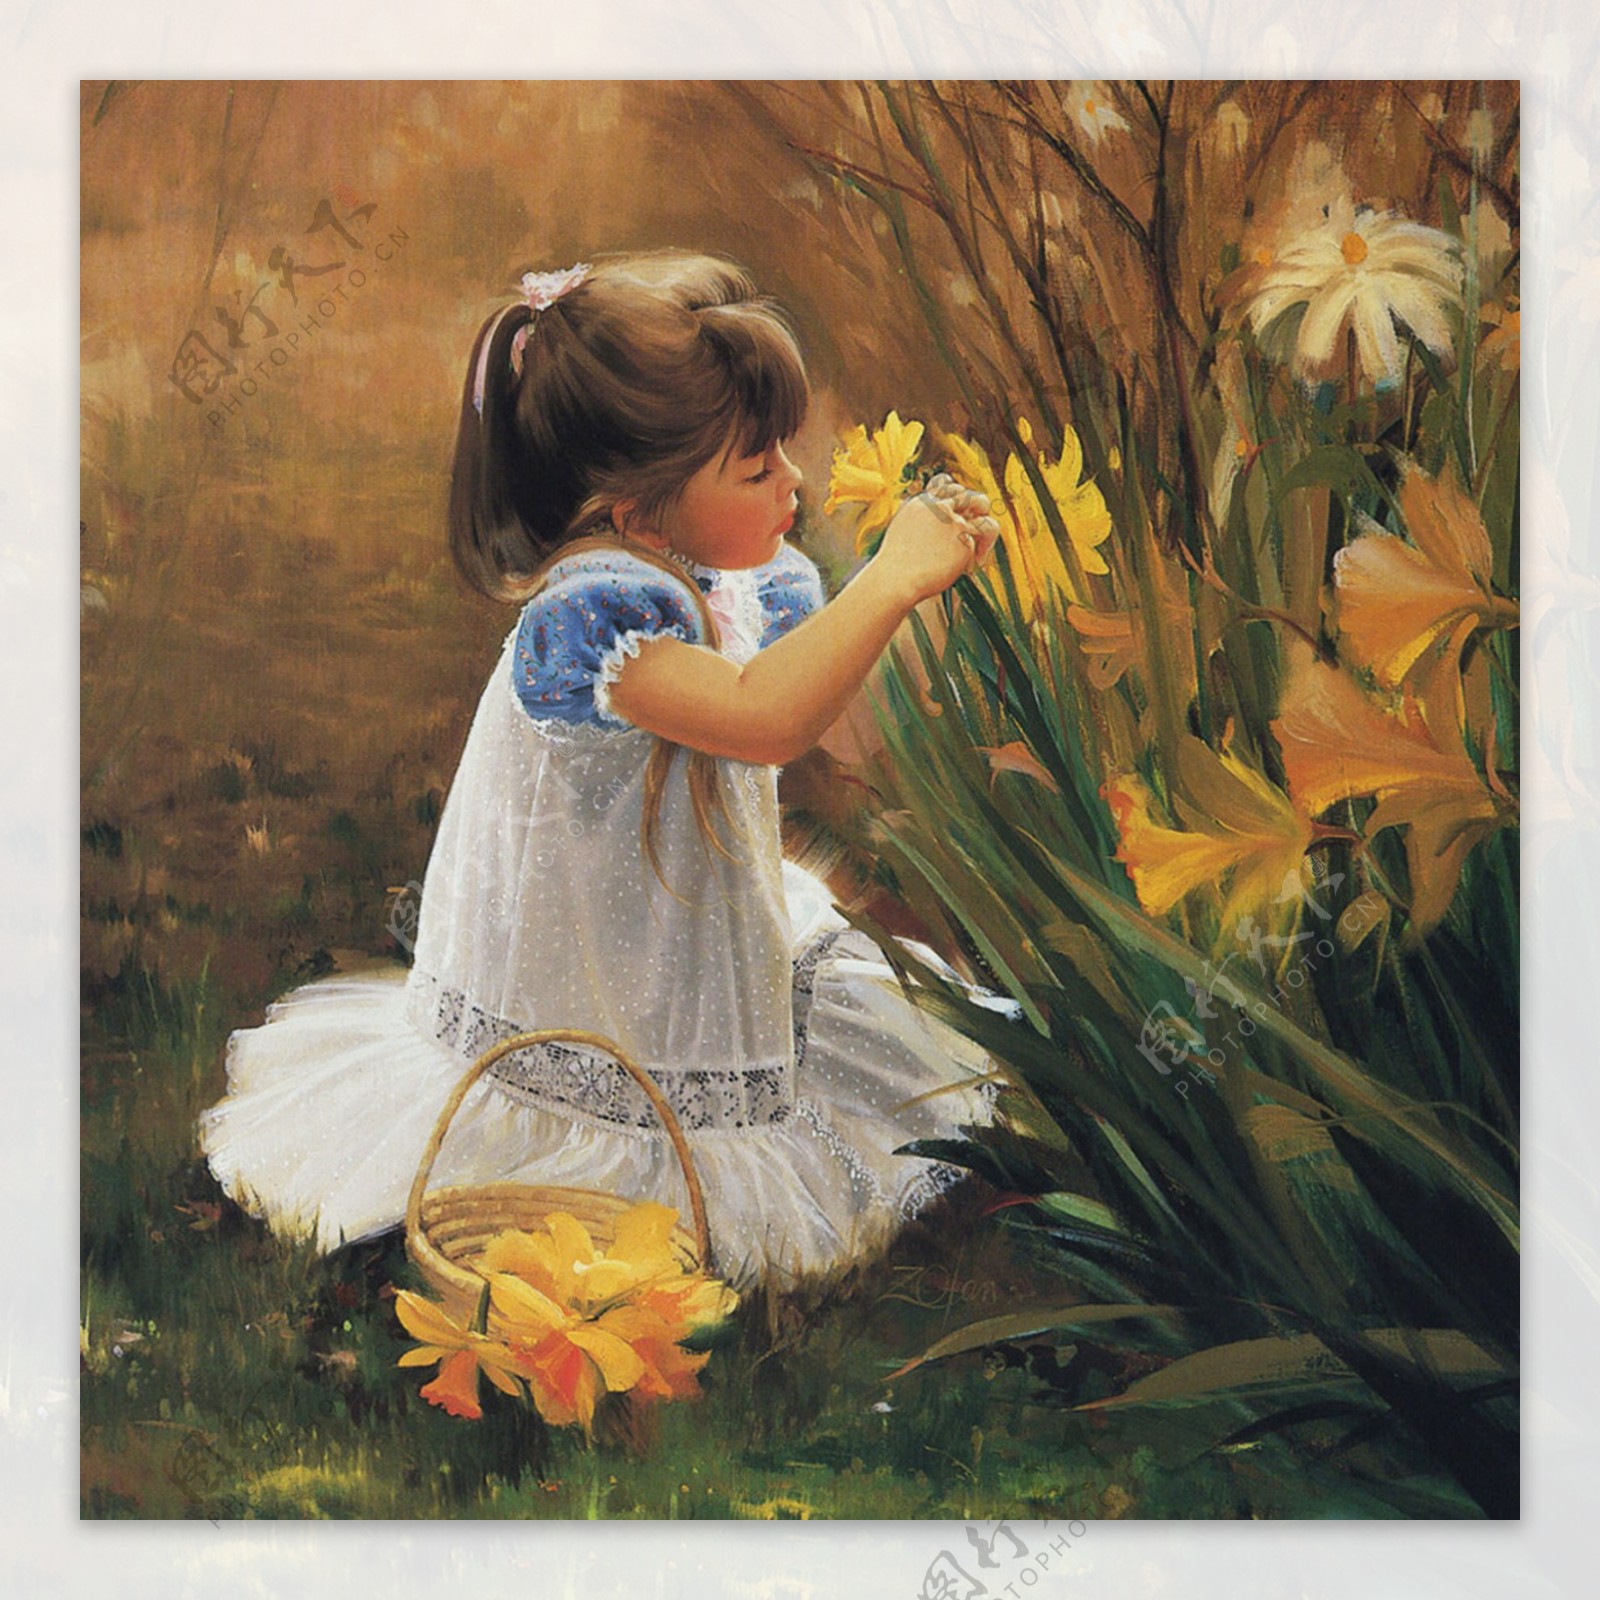 坐着草地上摘花的女孩油画图片